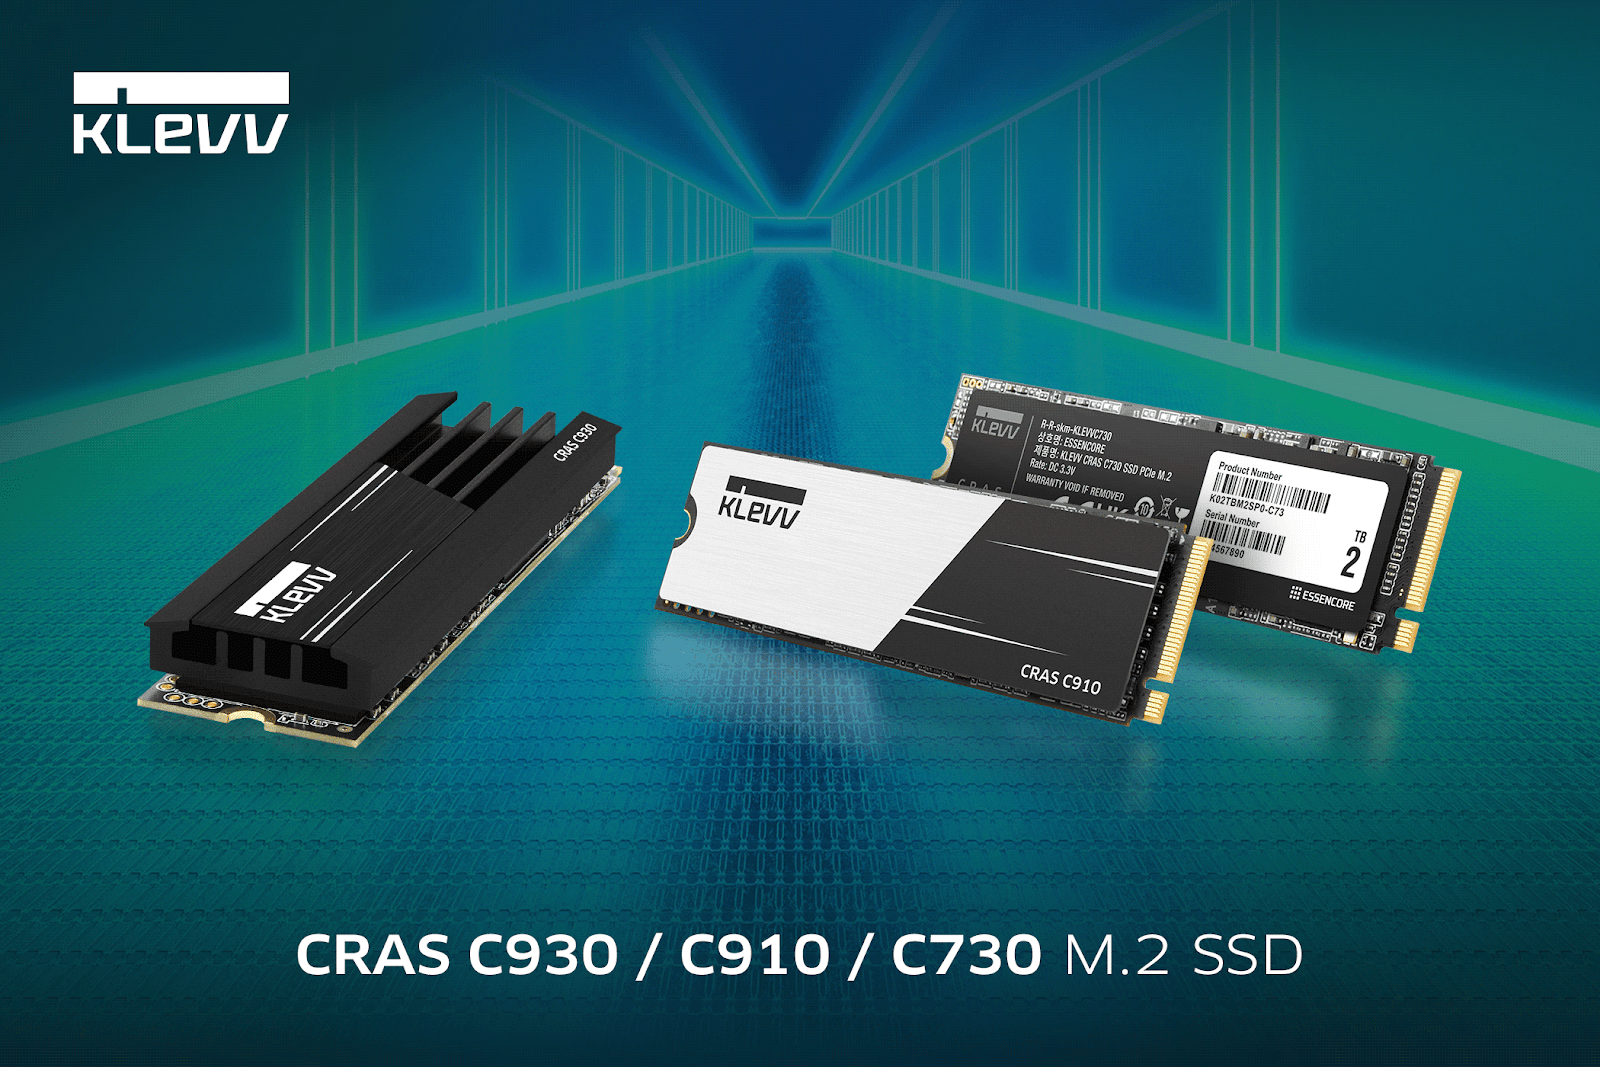 發表兩款嶄新 NVMe Gen4 M.2 固態硬碟--CRAS C930/C910，並推出 CRAS C730，強化 Gen3 M.2 固態硬碟產品線